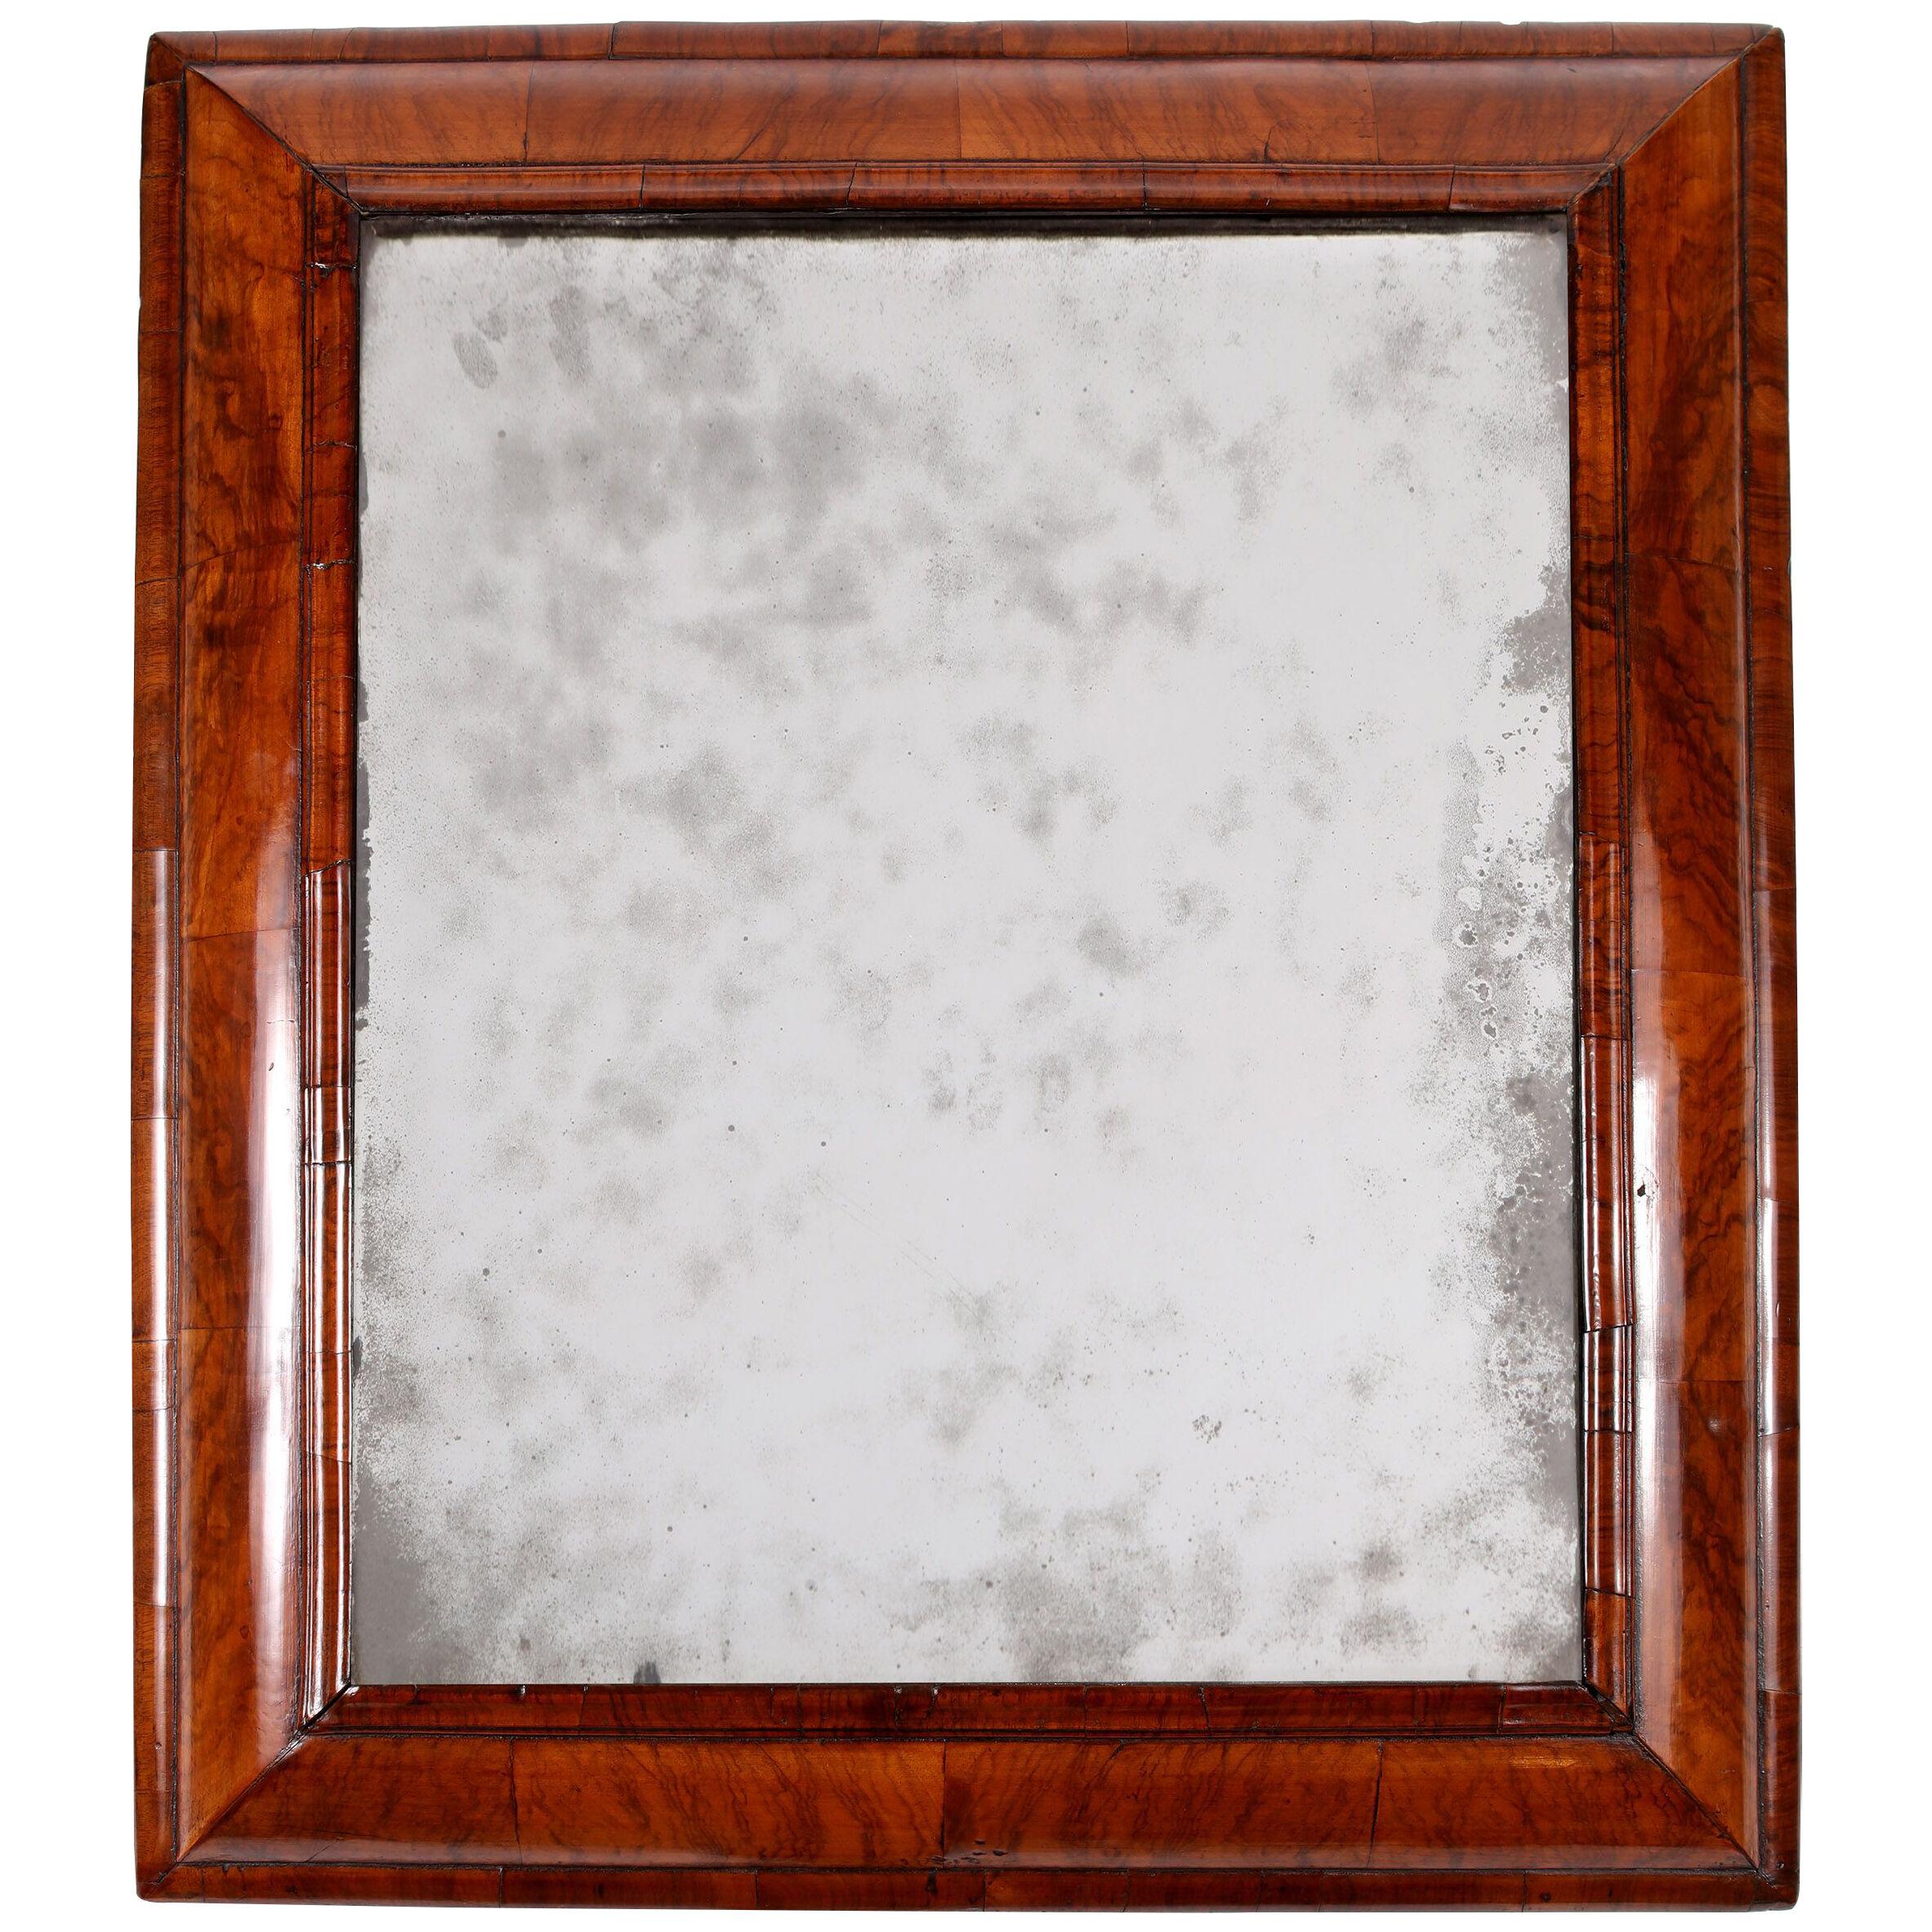 A William & Mary cushion-framed mirror